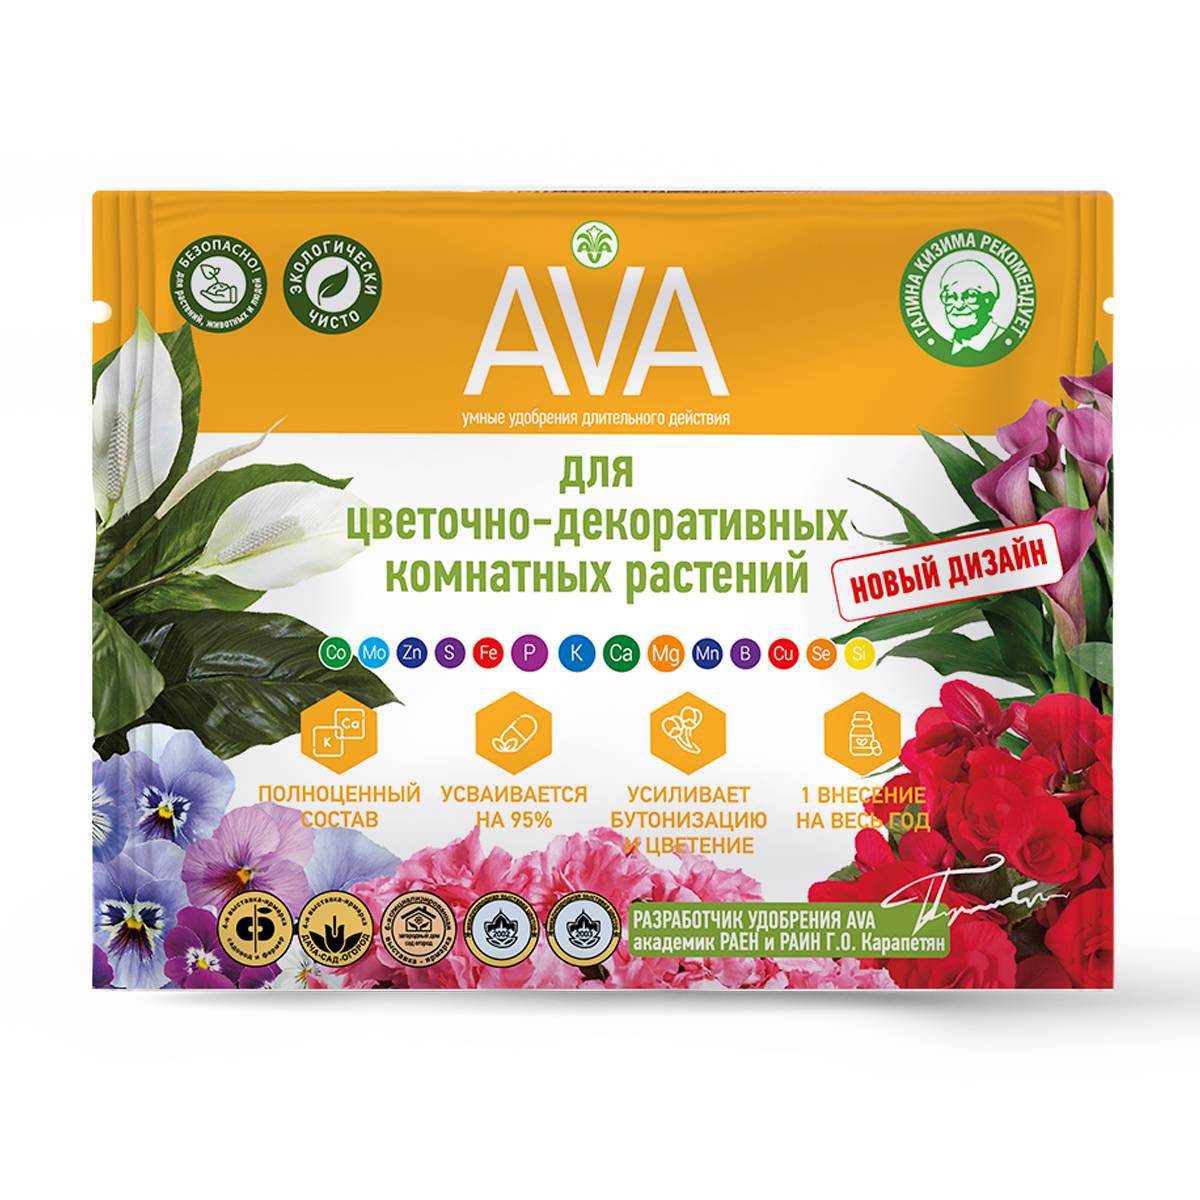 92726896 Удобрение для цветочно-декоративных комнатных растений AVA, 30 гр. STLM-0543542 VITA-AVA